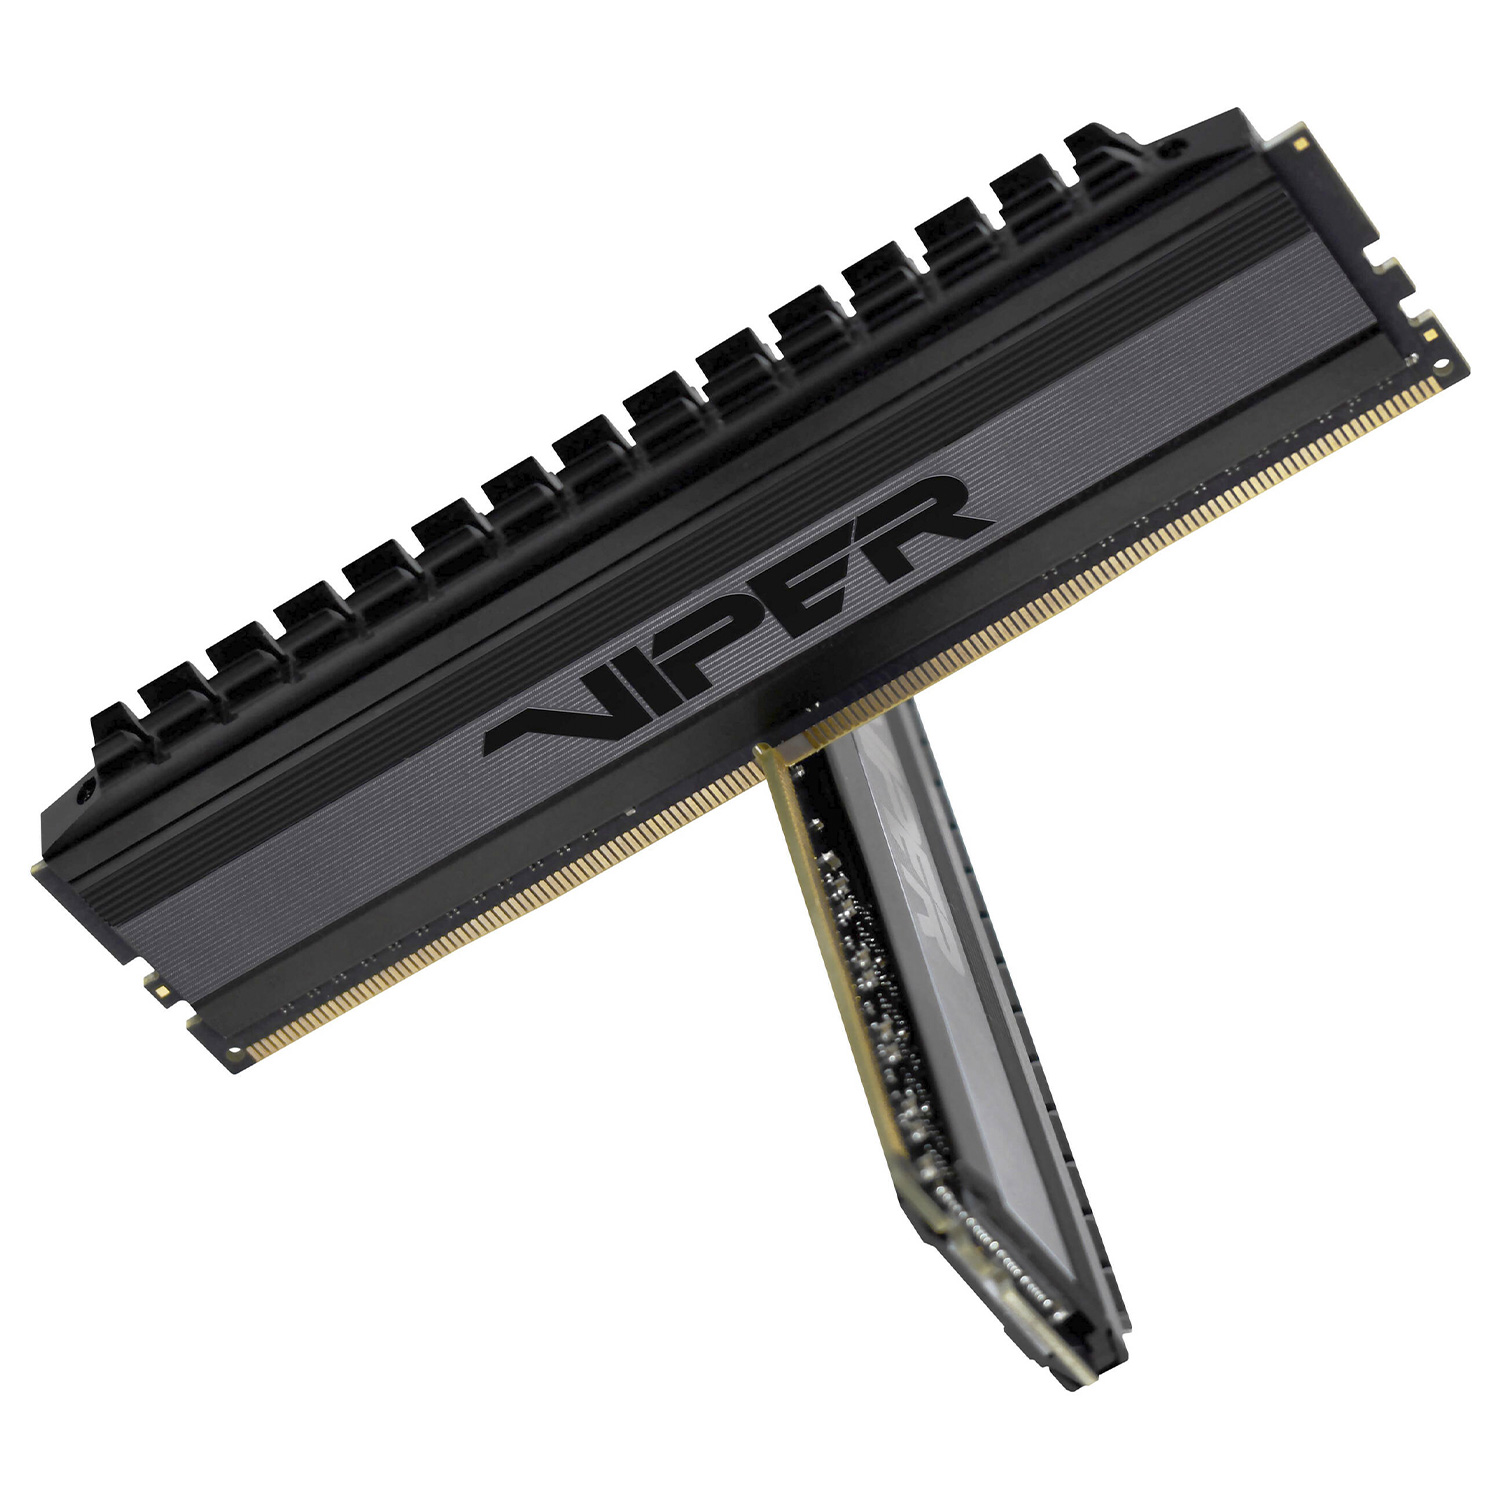 Memória RAM Patriot Viper 4 Blackout  / 2x16GB / DDR4 / 3200MHz - (PVB432G360C8K)
